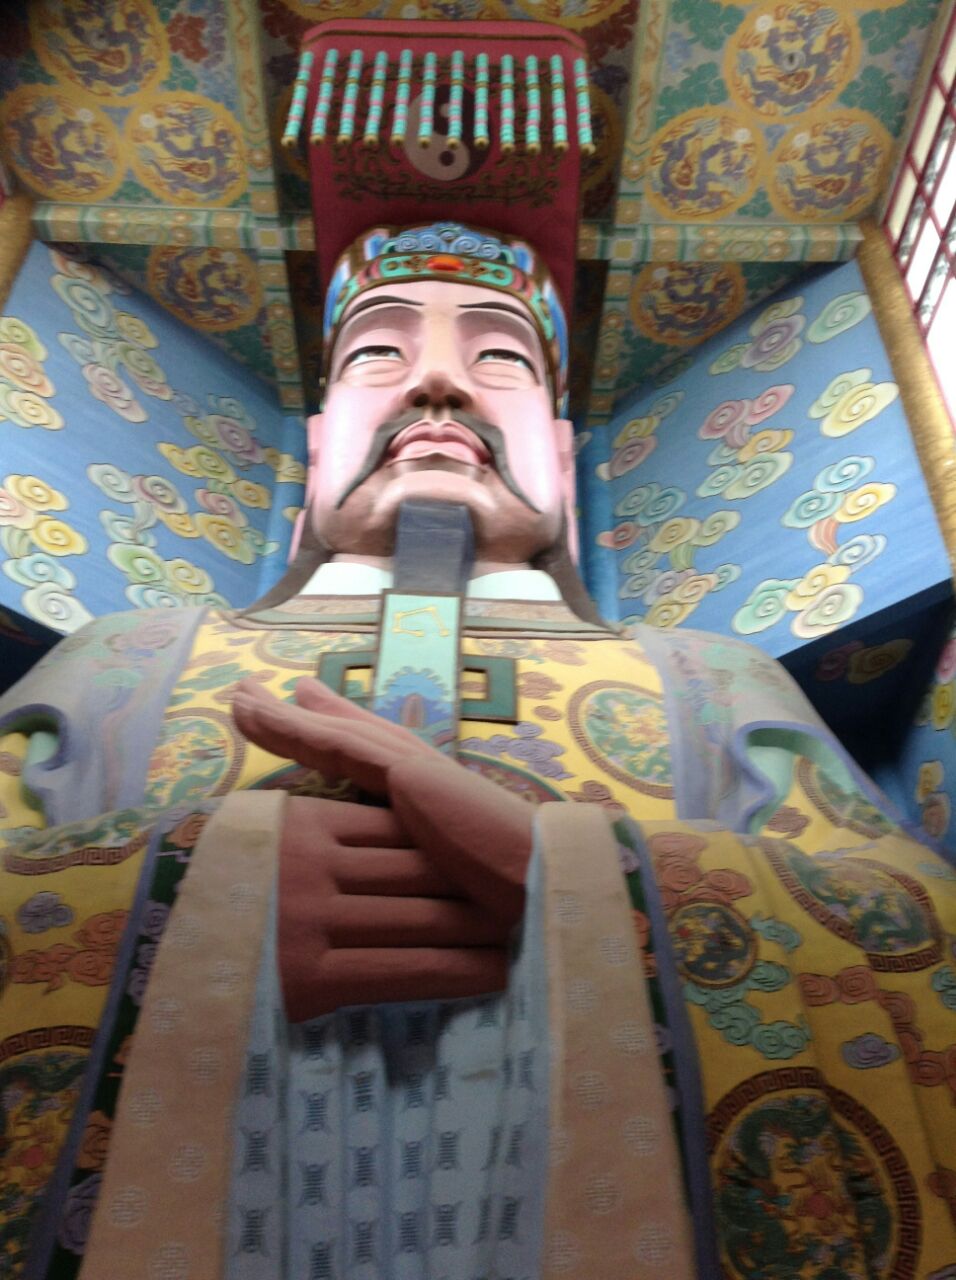 鼋头渚有游船到三山仙岛,岛上有座凌霄宝殿,里面的玉皇大帝,高18米